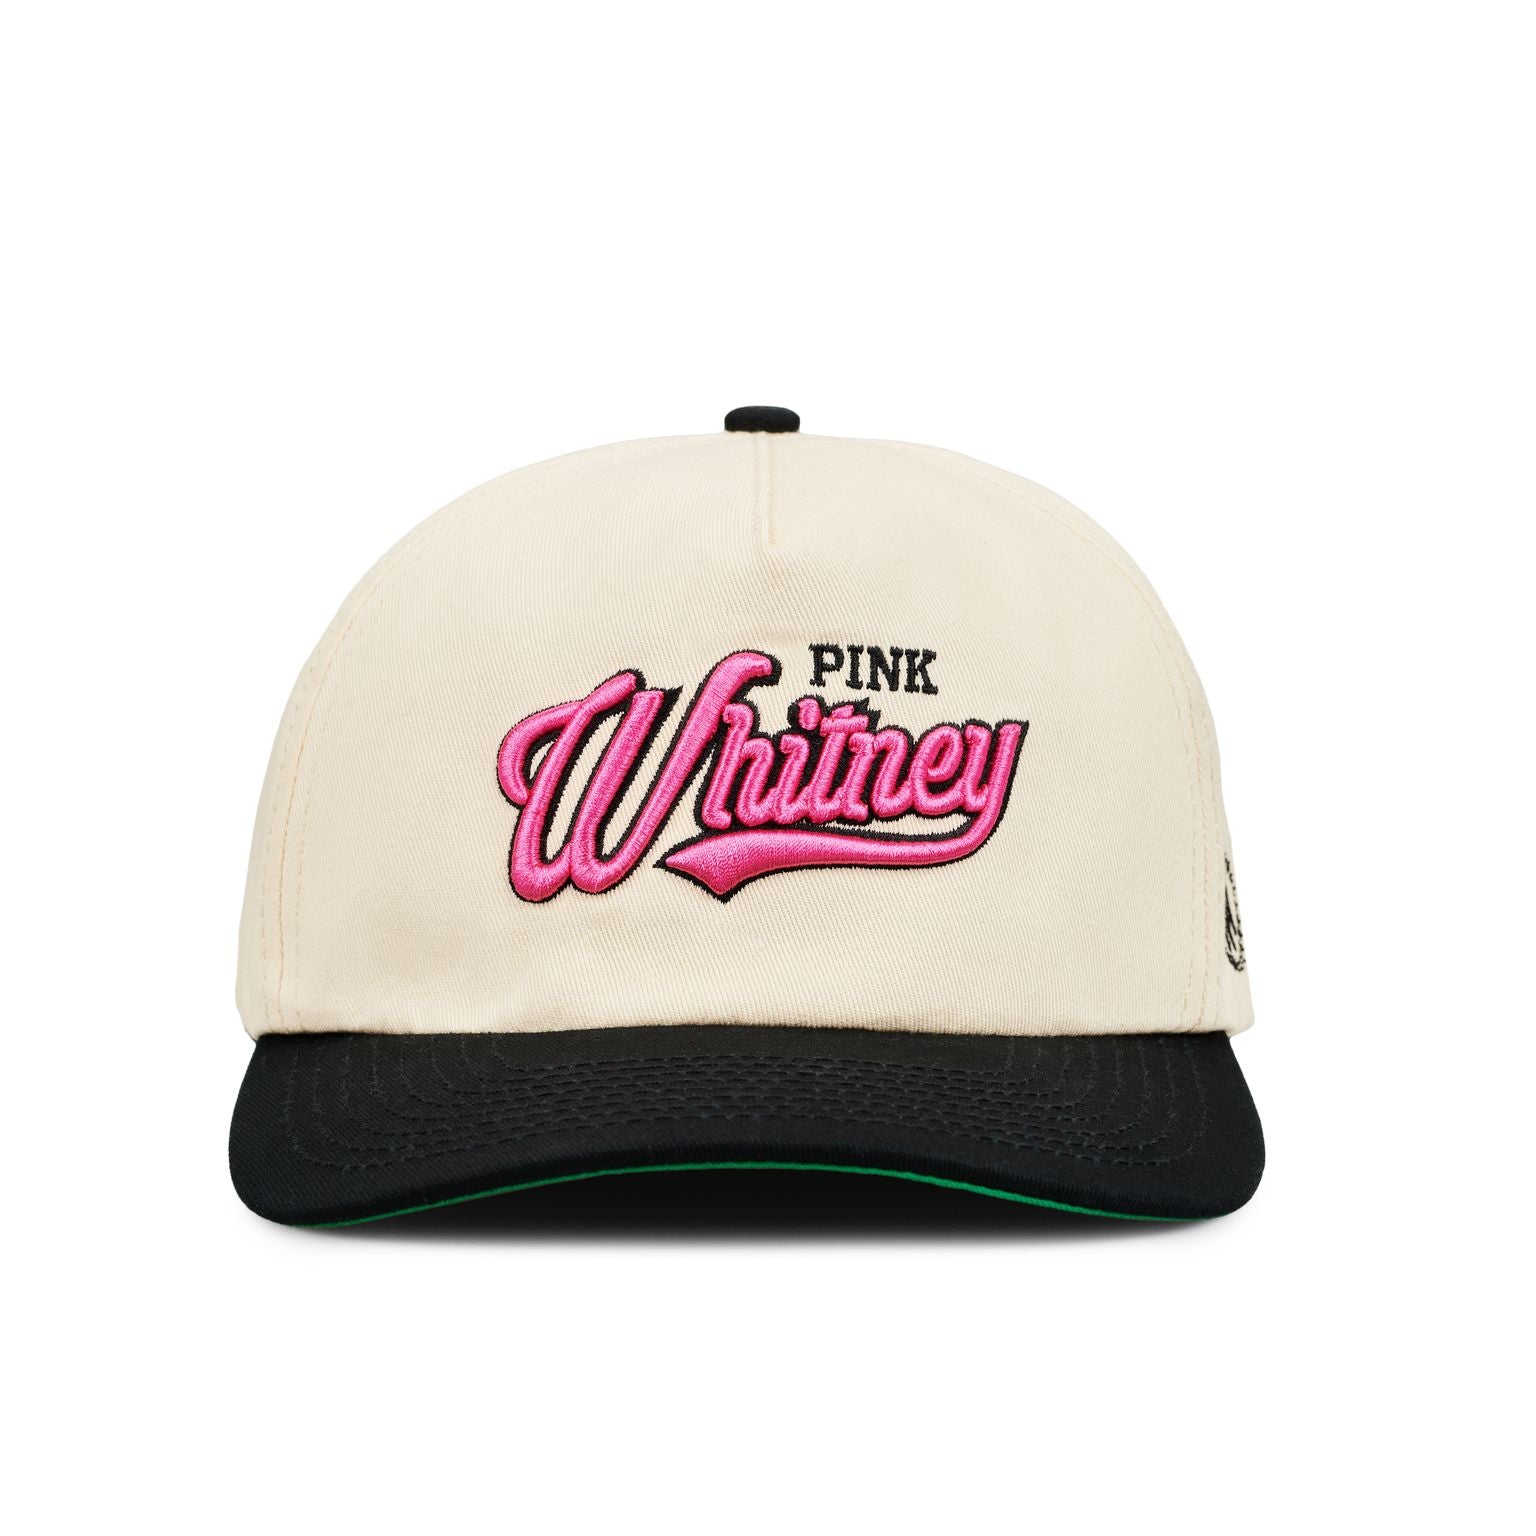 Pink Whitney Retro Snapback Hat-Hats-Pink Whitney-One Size-White-Barstool Sports